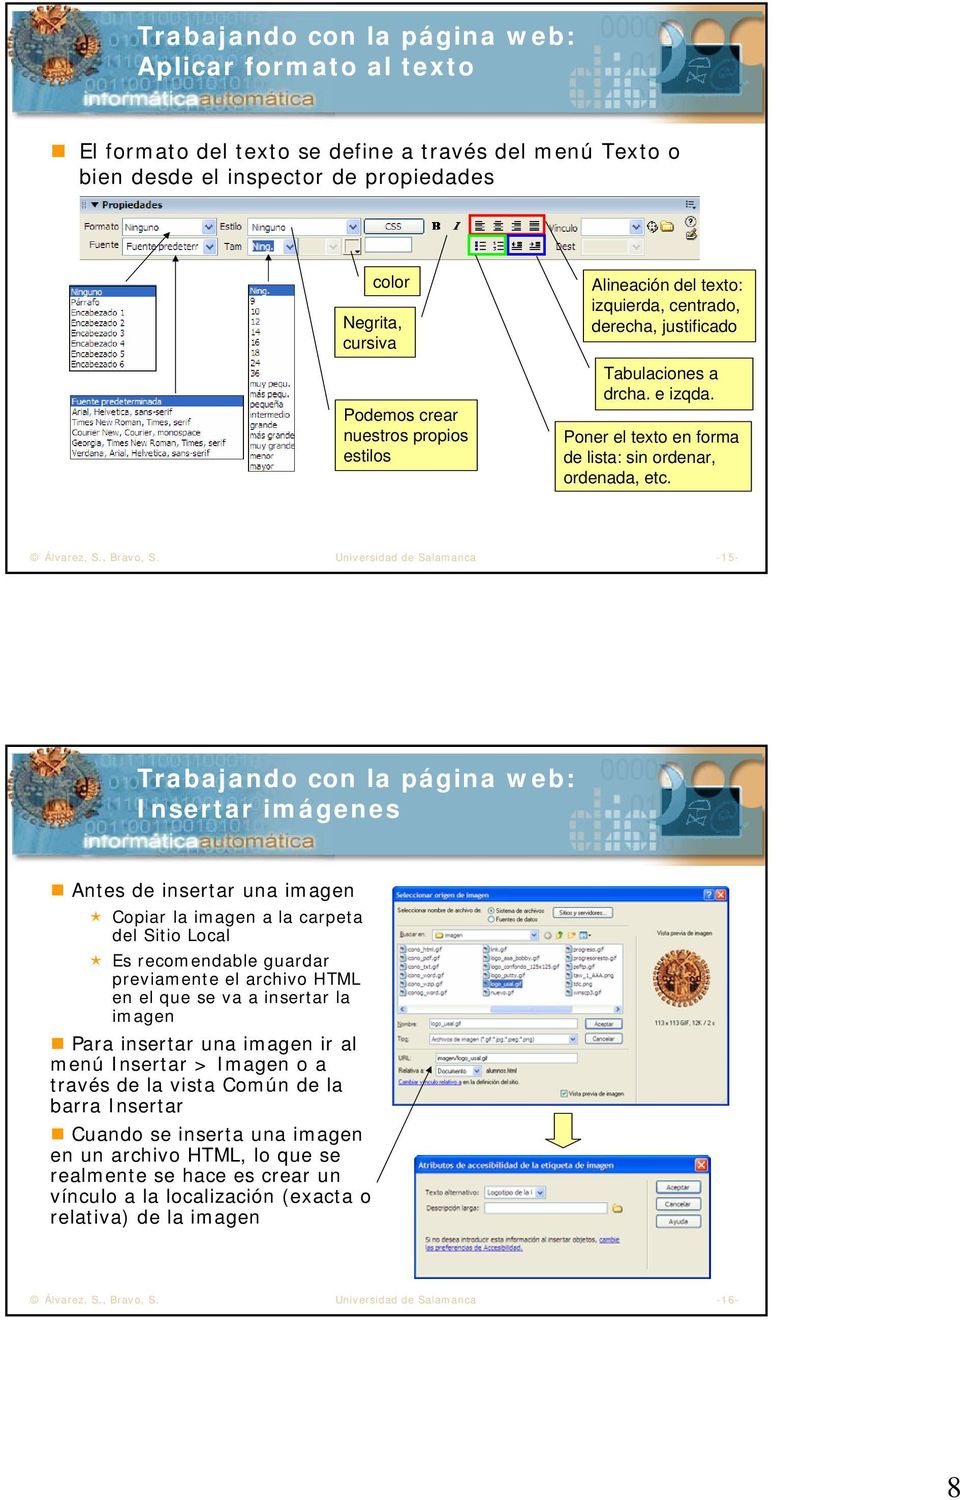 Universidad de Salamanca -15- Trabajando con la página web: Insertar imágenes Antes de insertar una imagen Copiar la imagen a la carpeta del Sitio Local Es recomendable guardar previamente el archivo